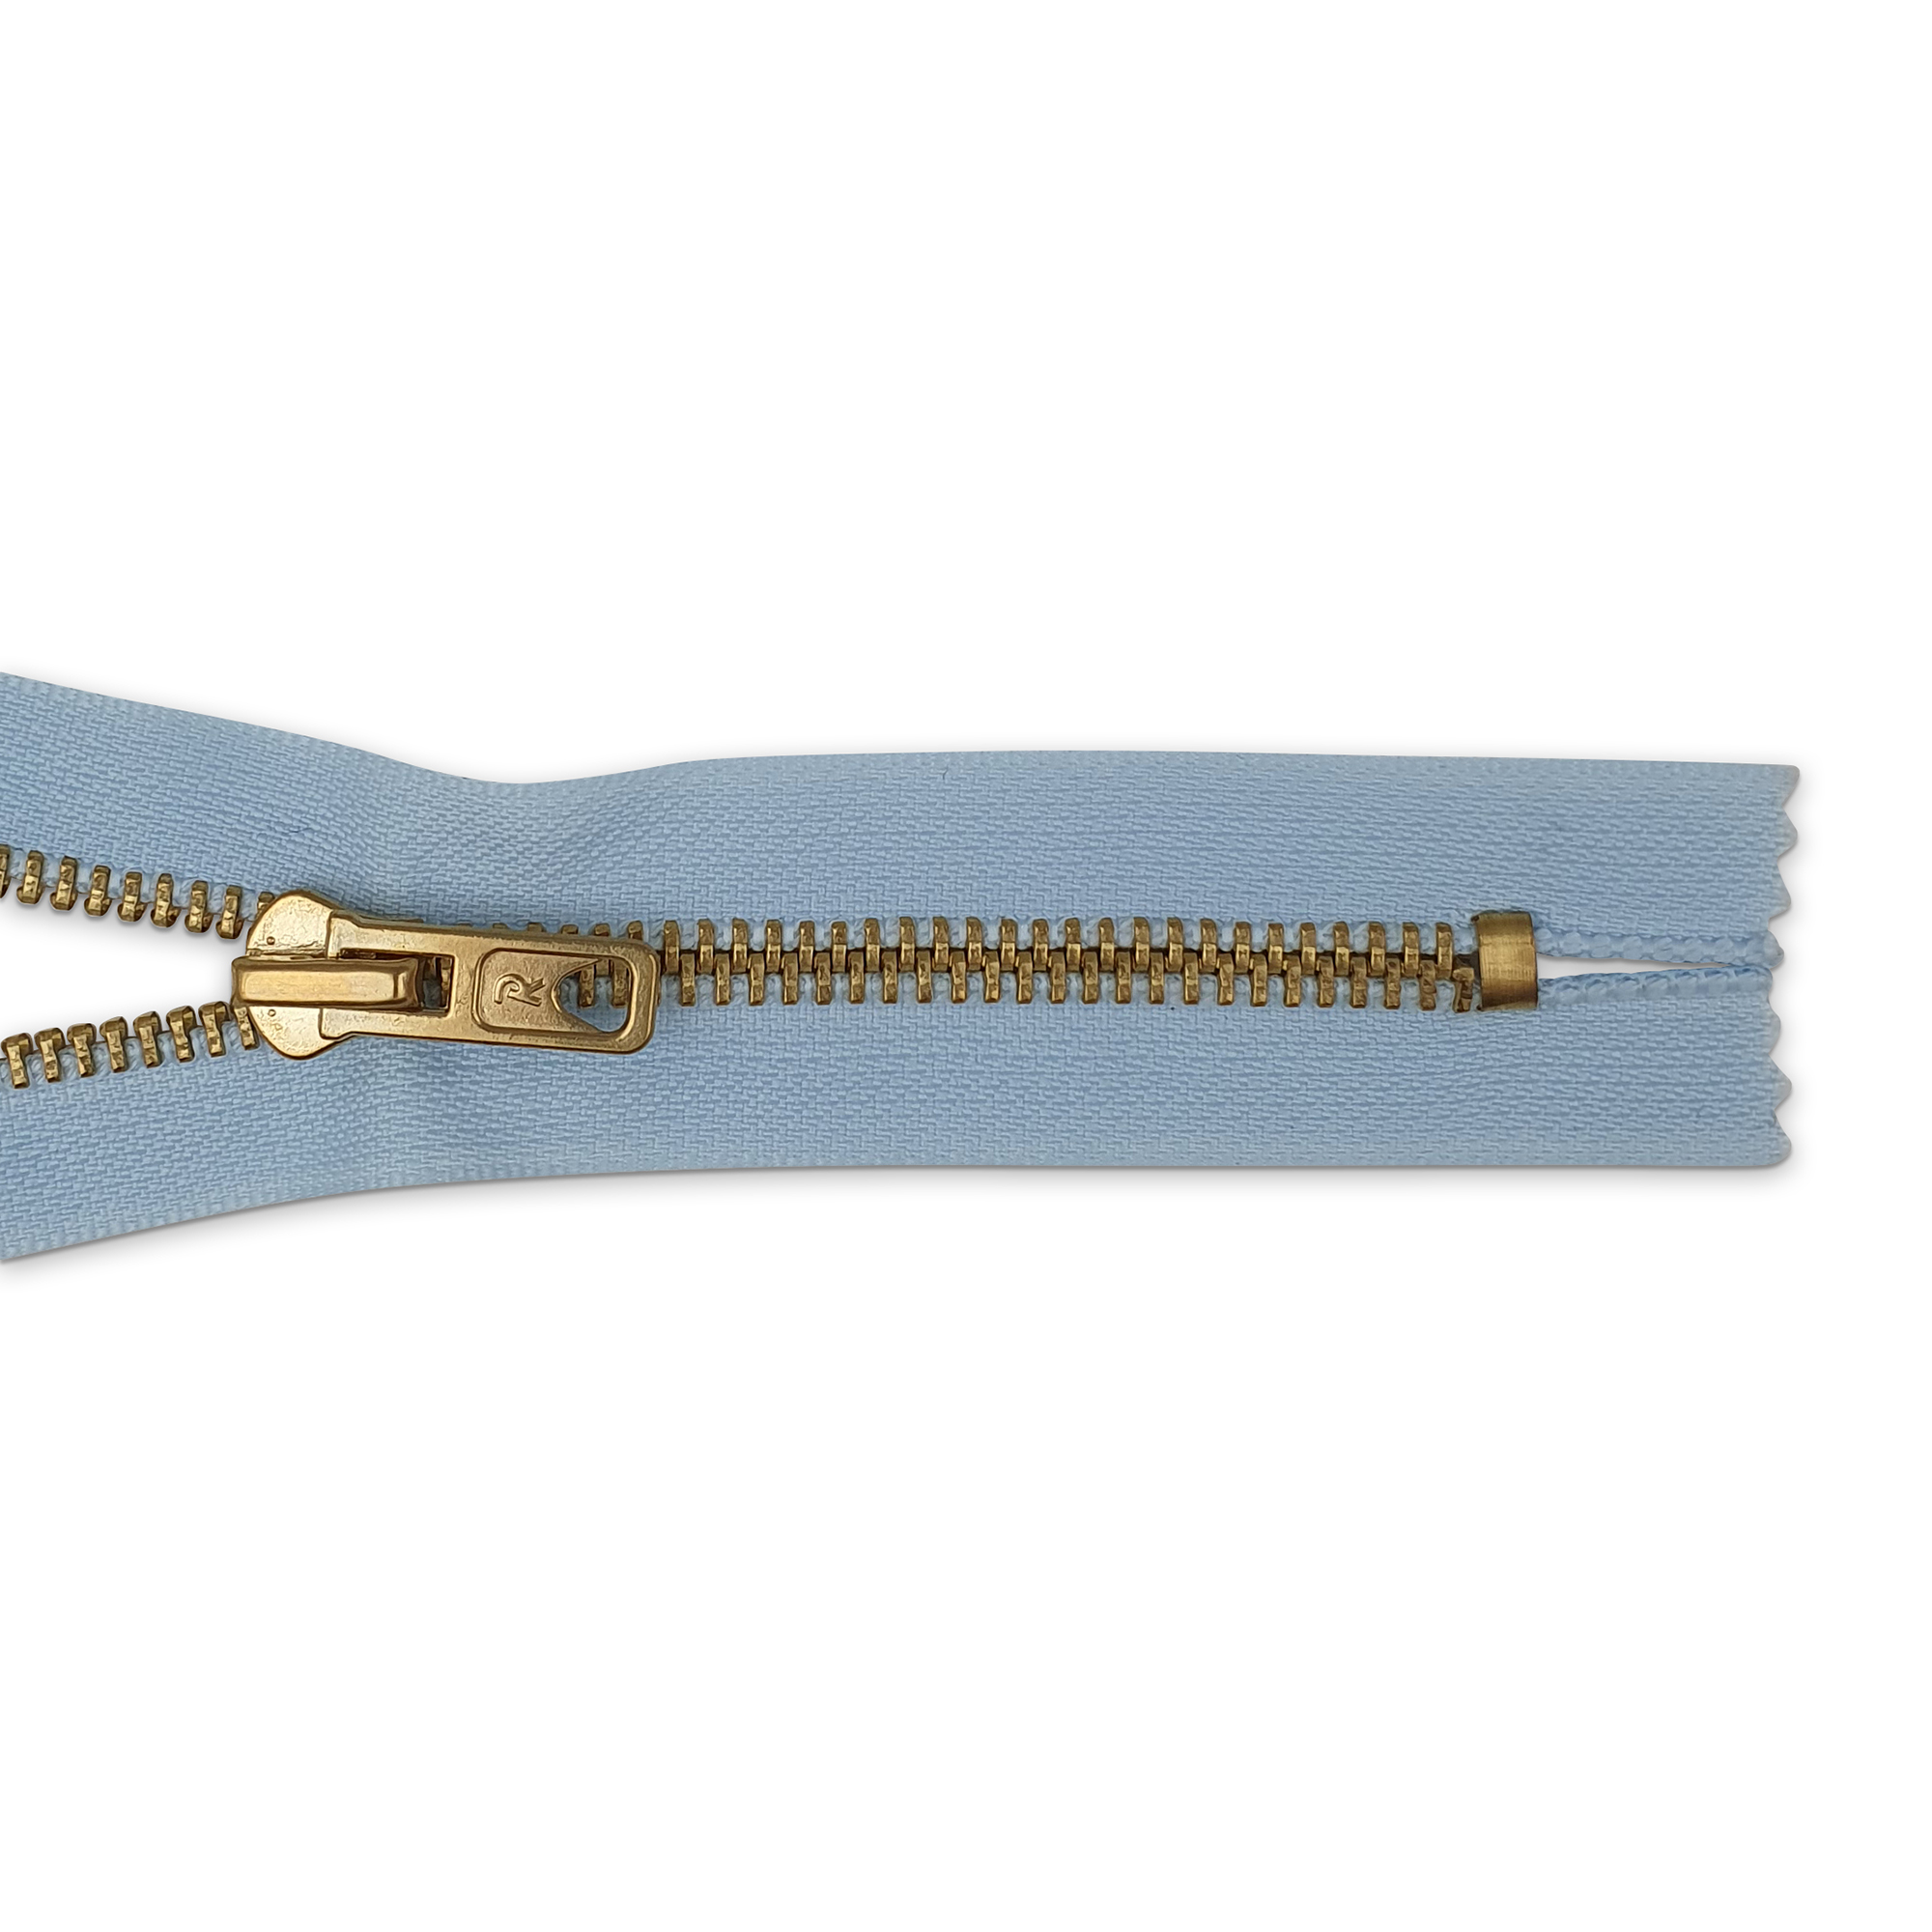 Reißverschluss 18cm, nicht teilbar, Metall goldf. breit, gardeniablau (blassblau), hochwertiger Marken-Reißverschluss von Rubi/Barcelona